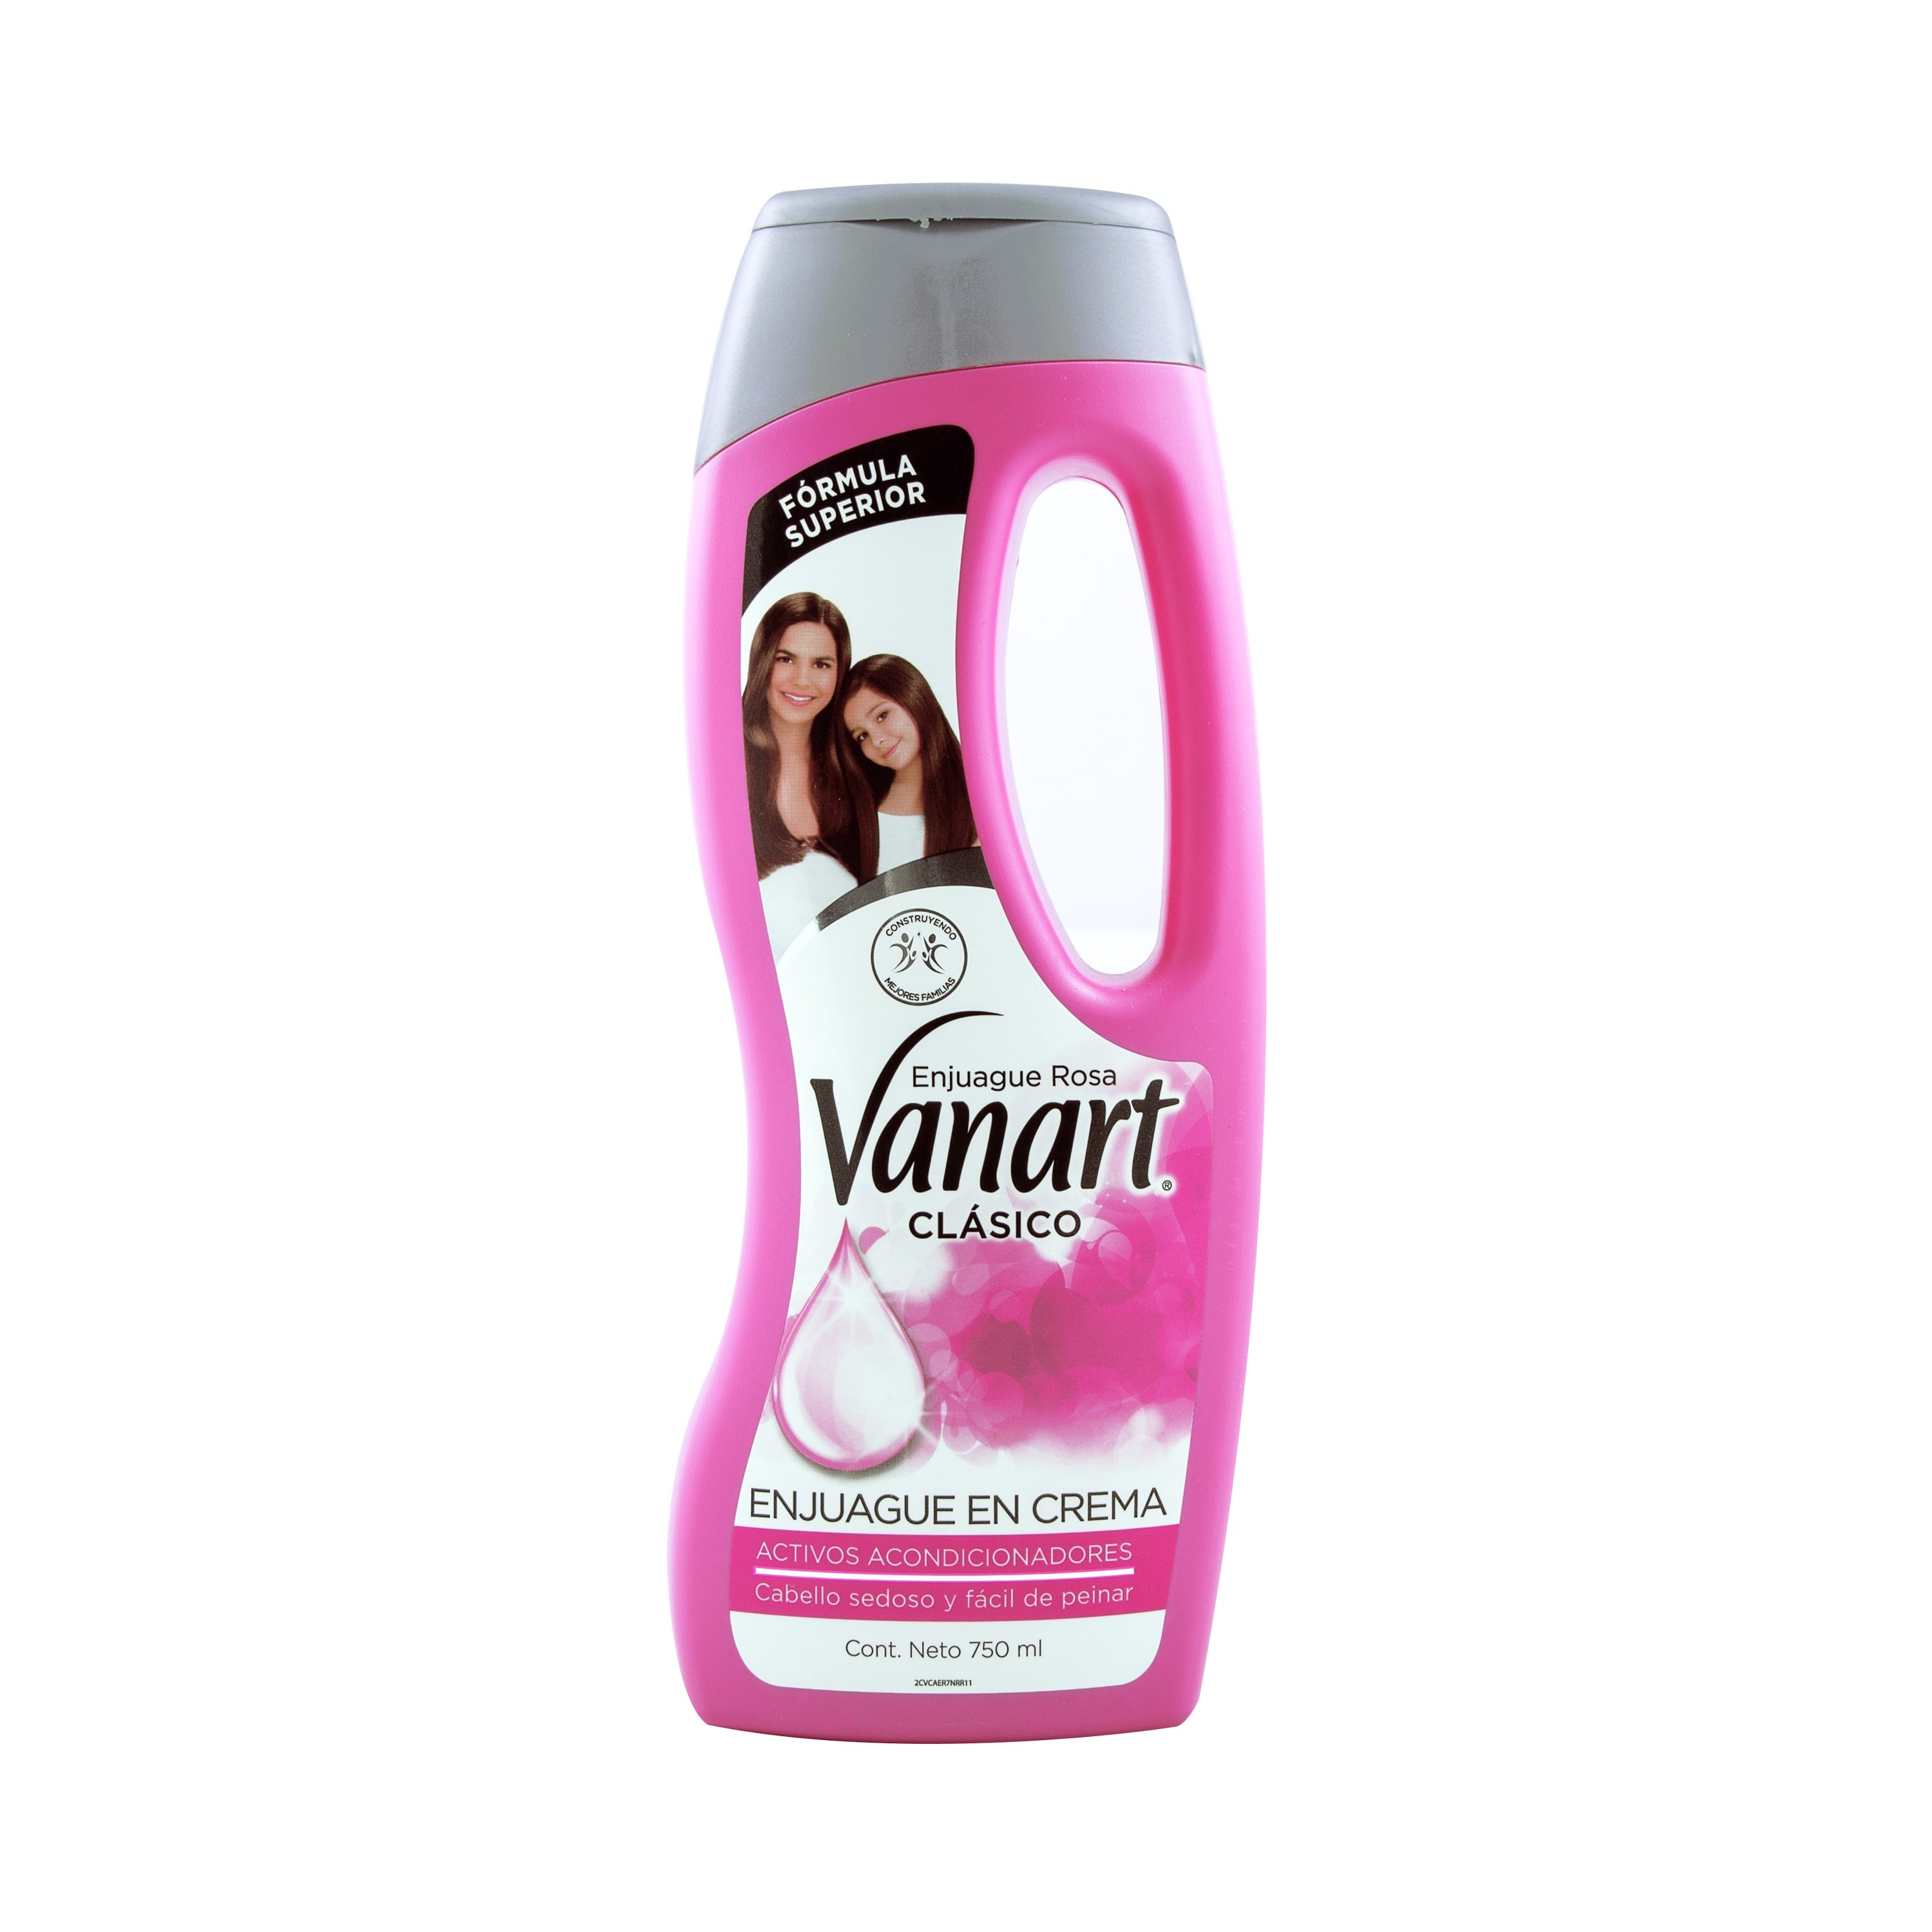 Vanart Clásico Enjuague Rosa 750 ml